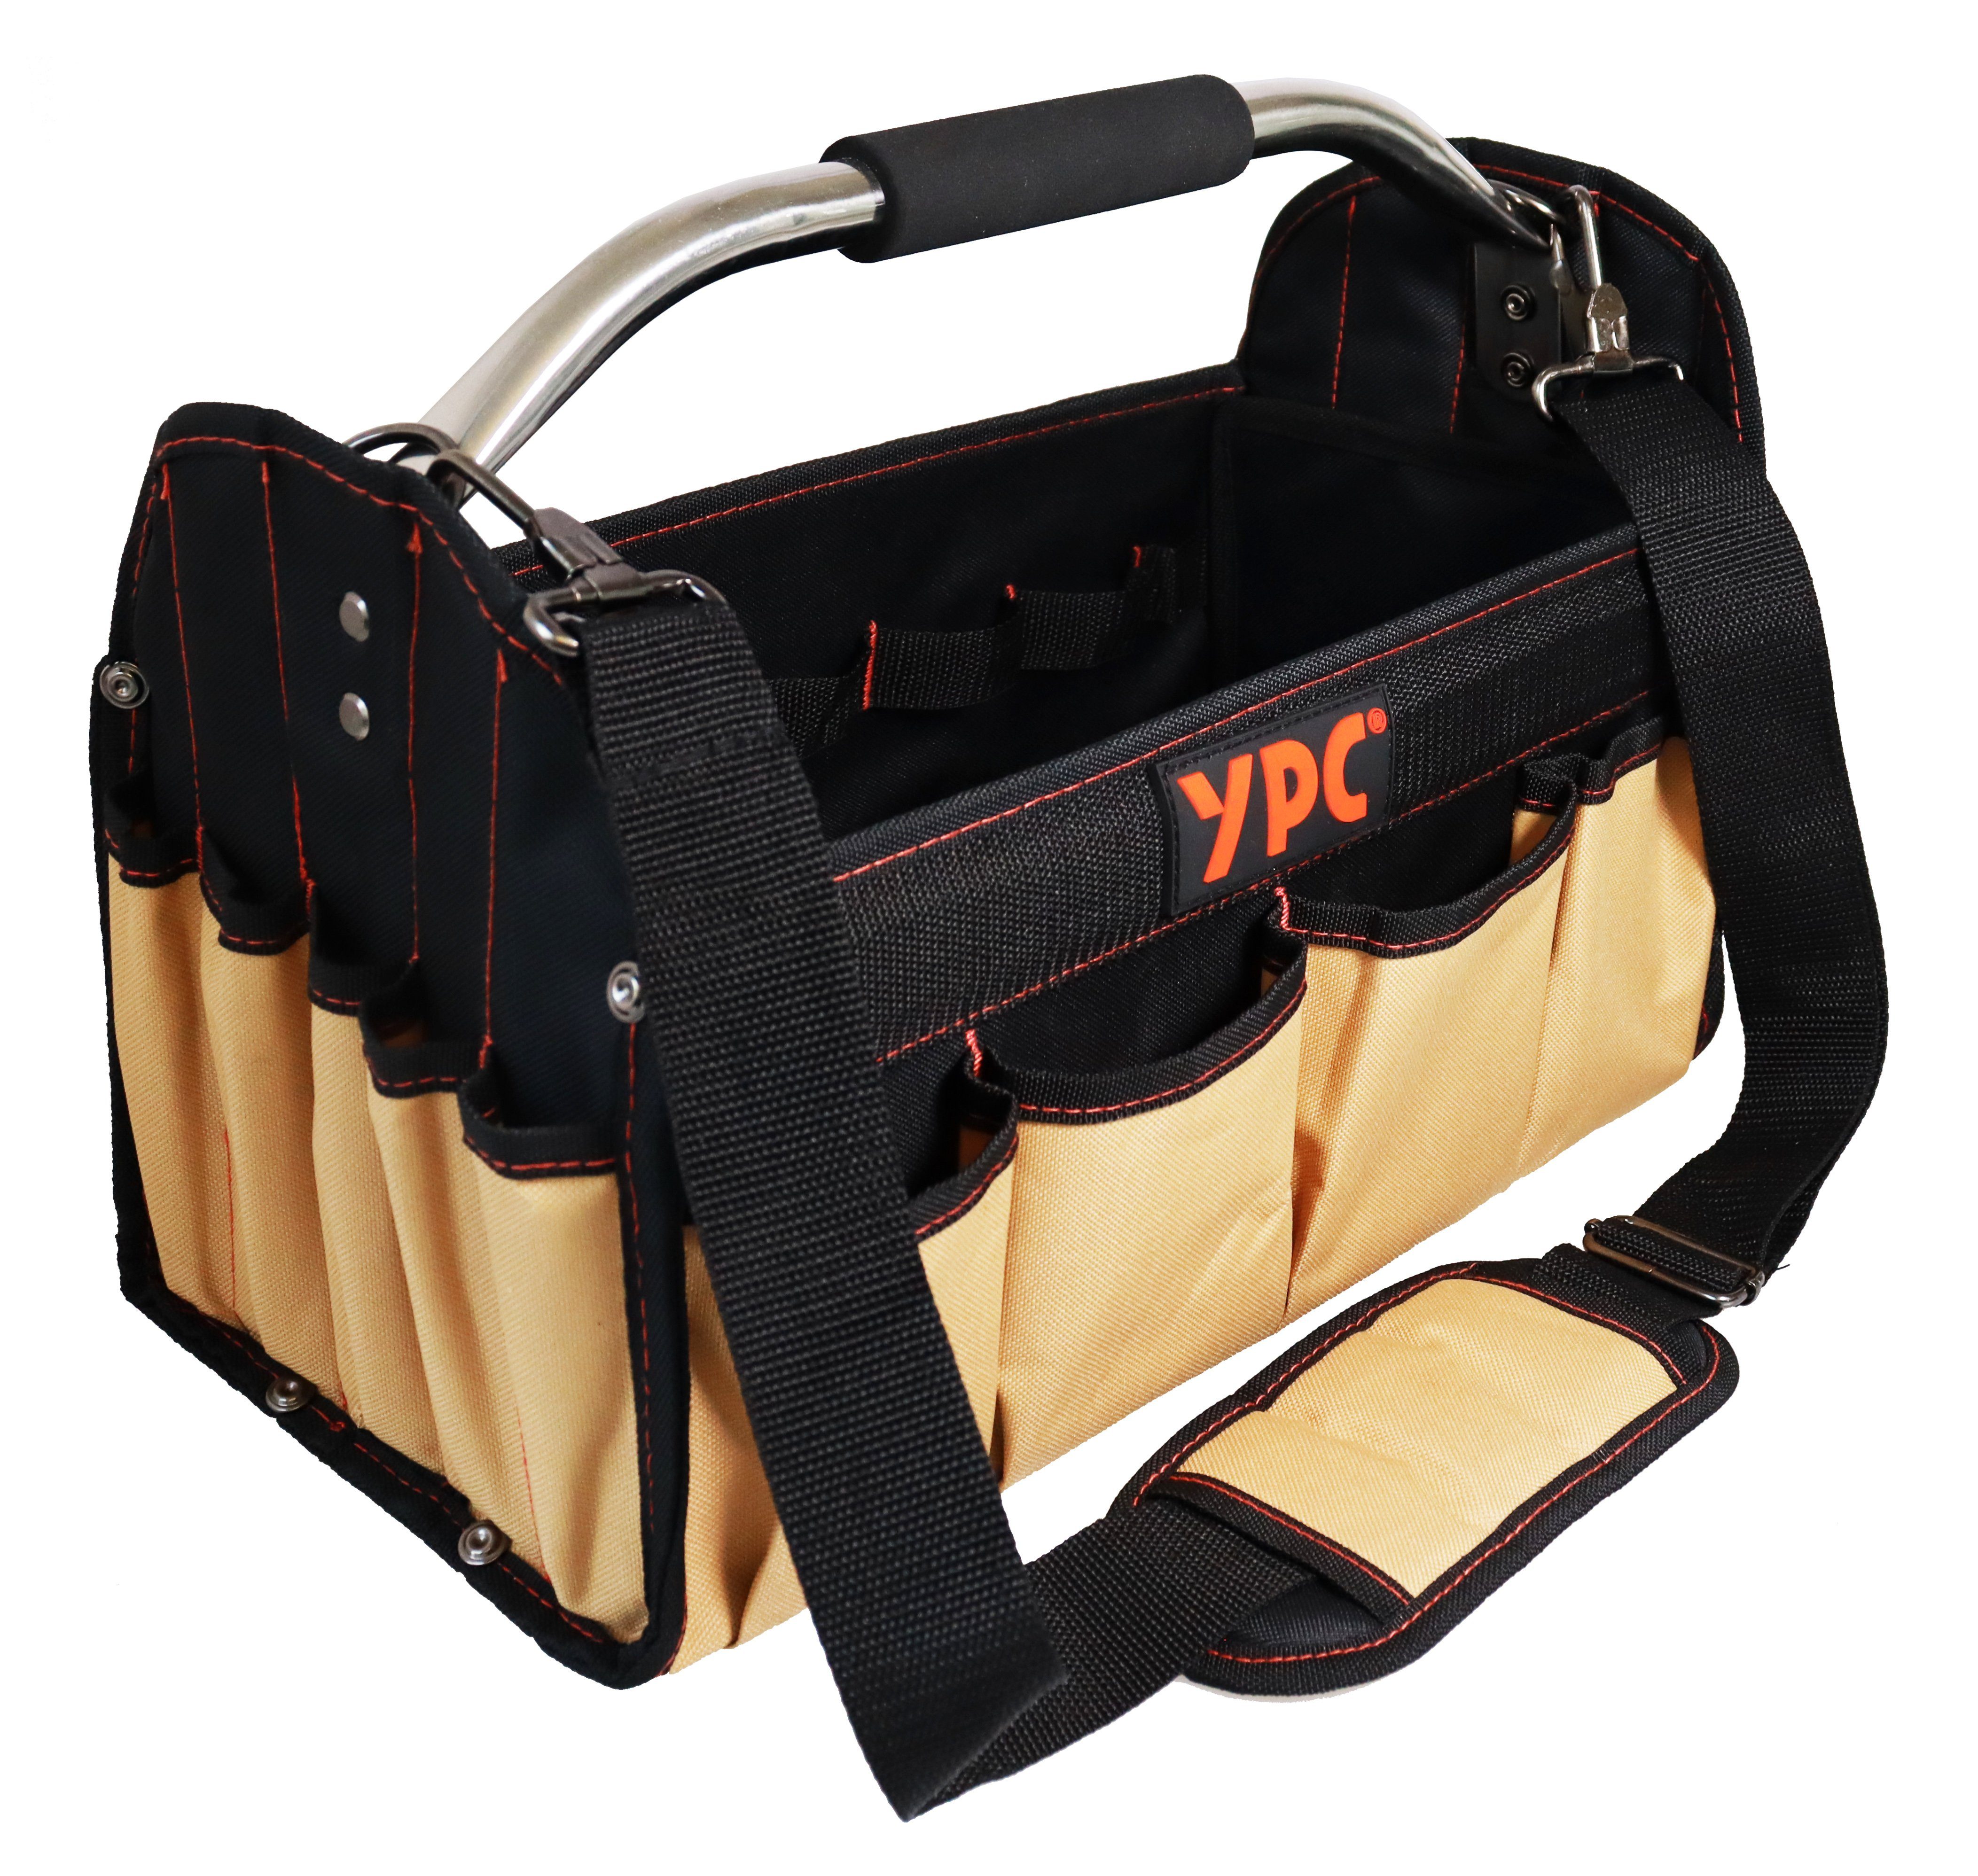 YPC Werkzeugtasche "Carrier" Werkzeugkorb XL, offene Werkzeugtasche mit Metallgriff, 40,5x30x19,5cm, 20 kg Tragkraft, Tragetasche für Werkzeug mit Haltern, Fächern und Einschüben Beige | Werkzeugtaschen